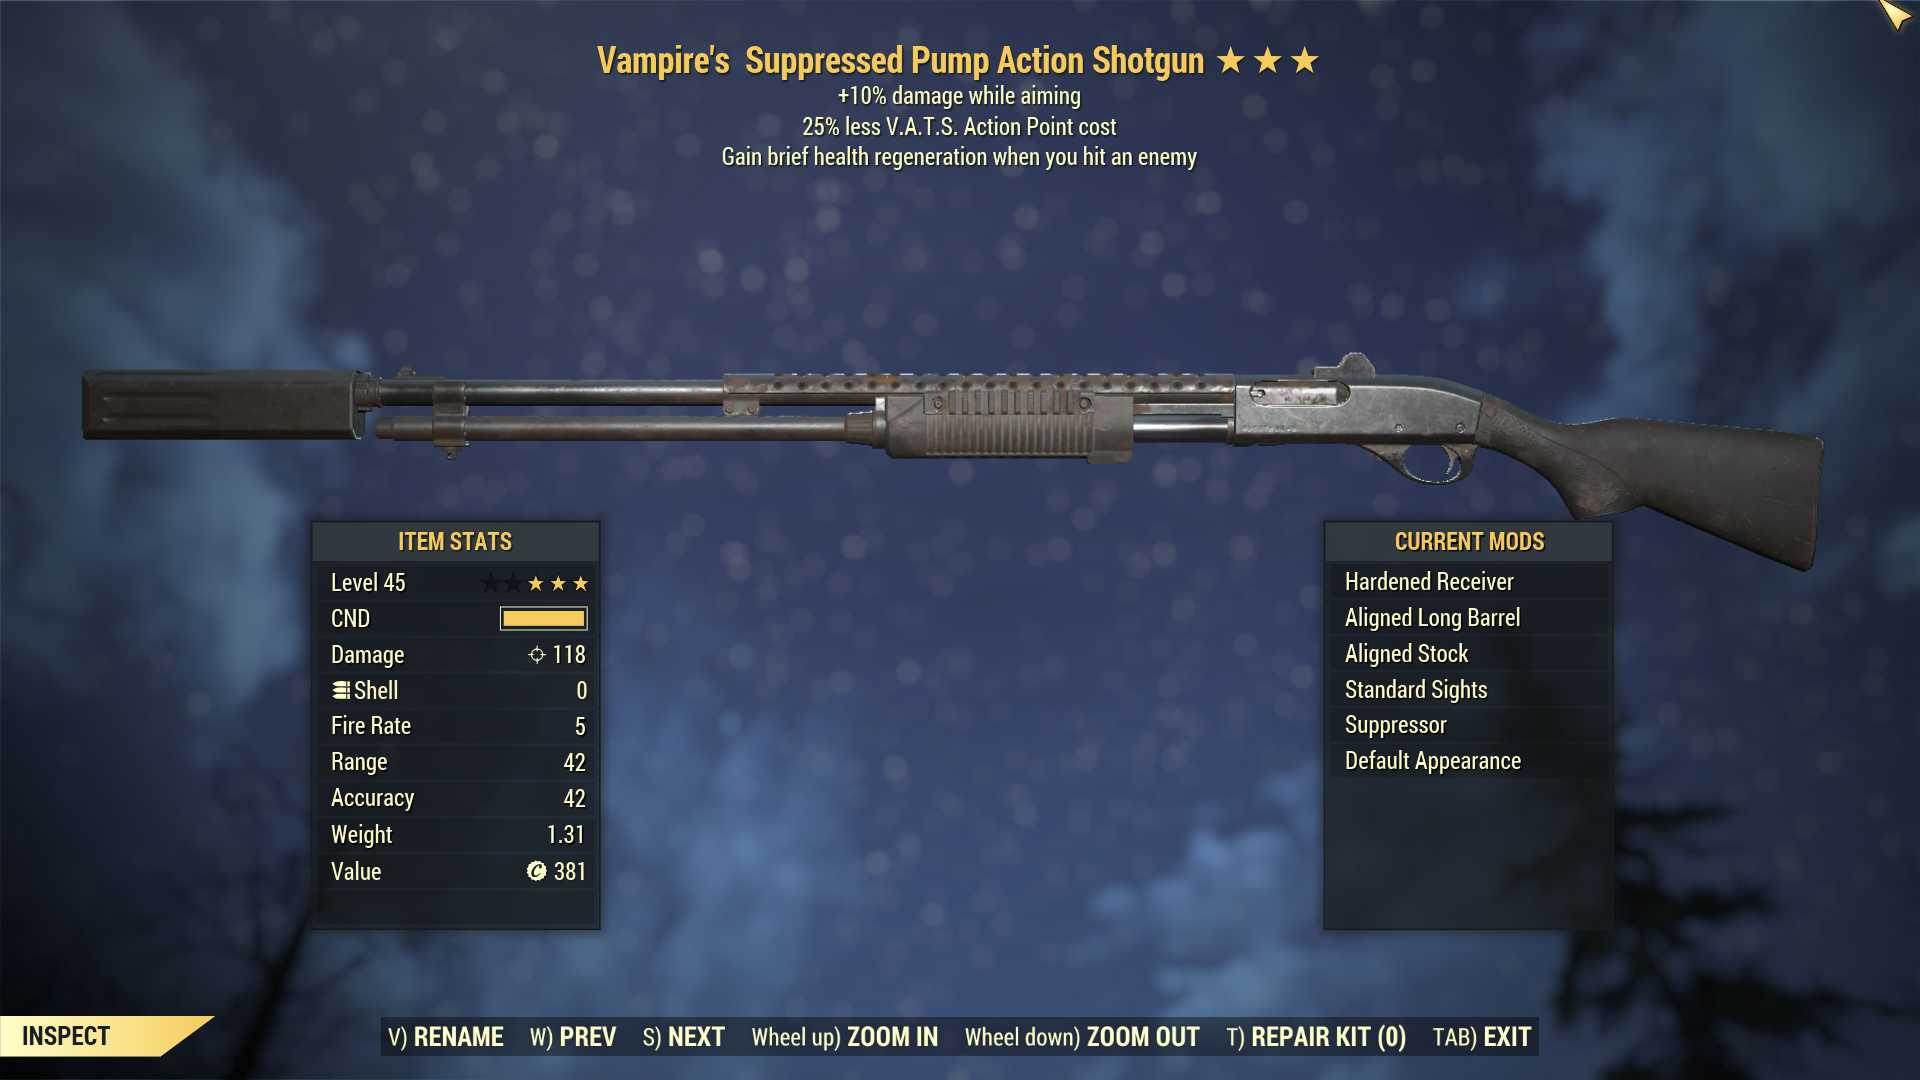 Vampire's Pump Action Shotgun (+25% damage WA, 25% less VATS AP cost)